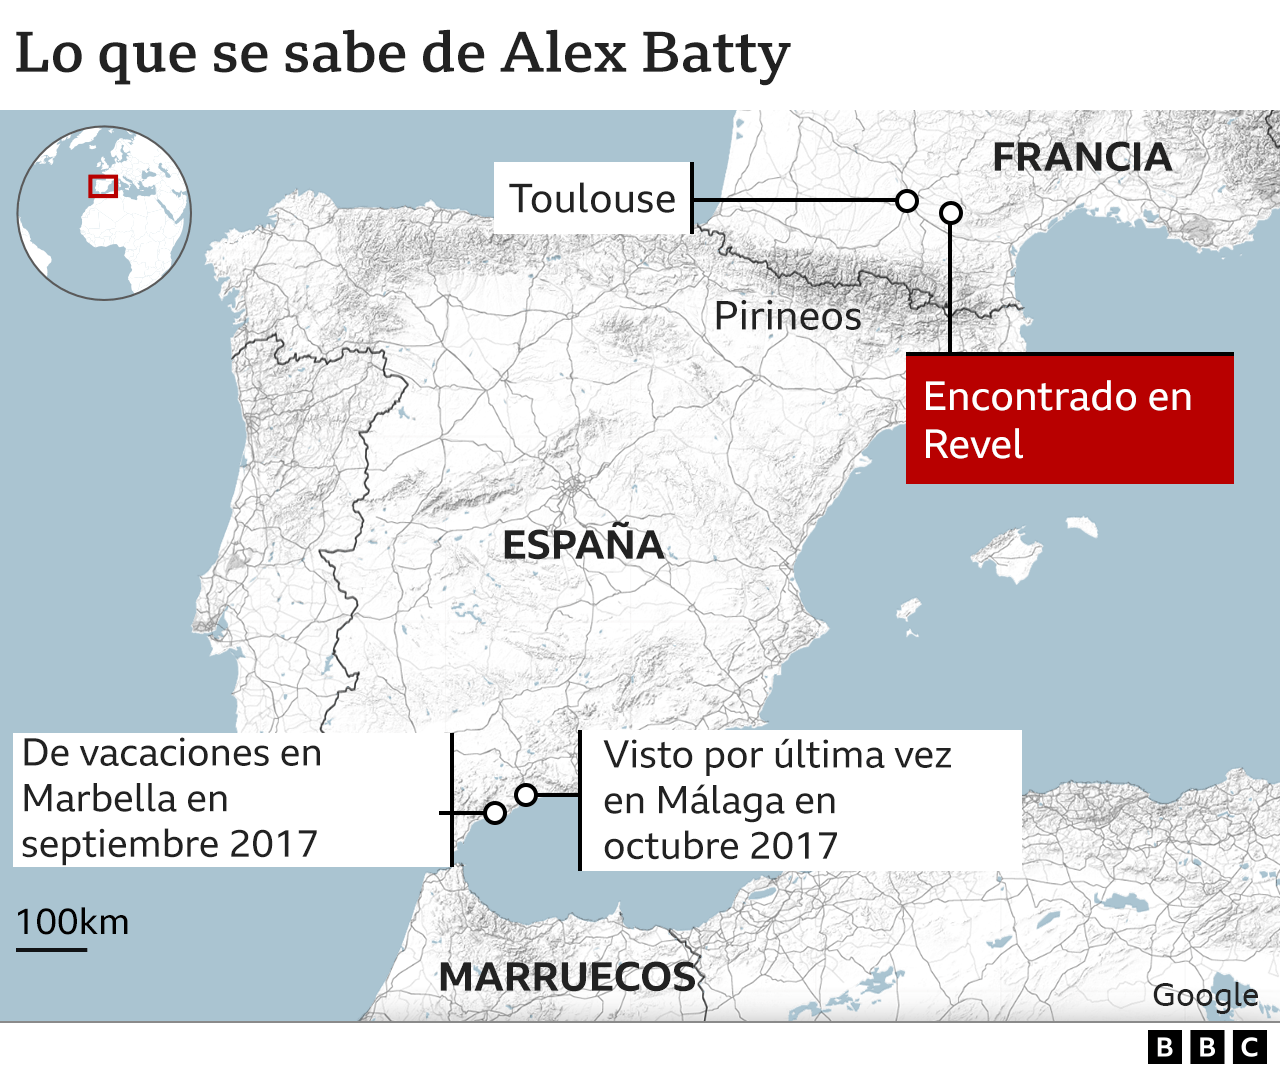 Mapa que muestra los diferentes paraderos de Alex Batty